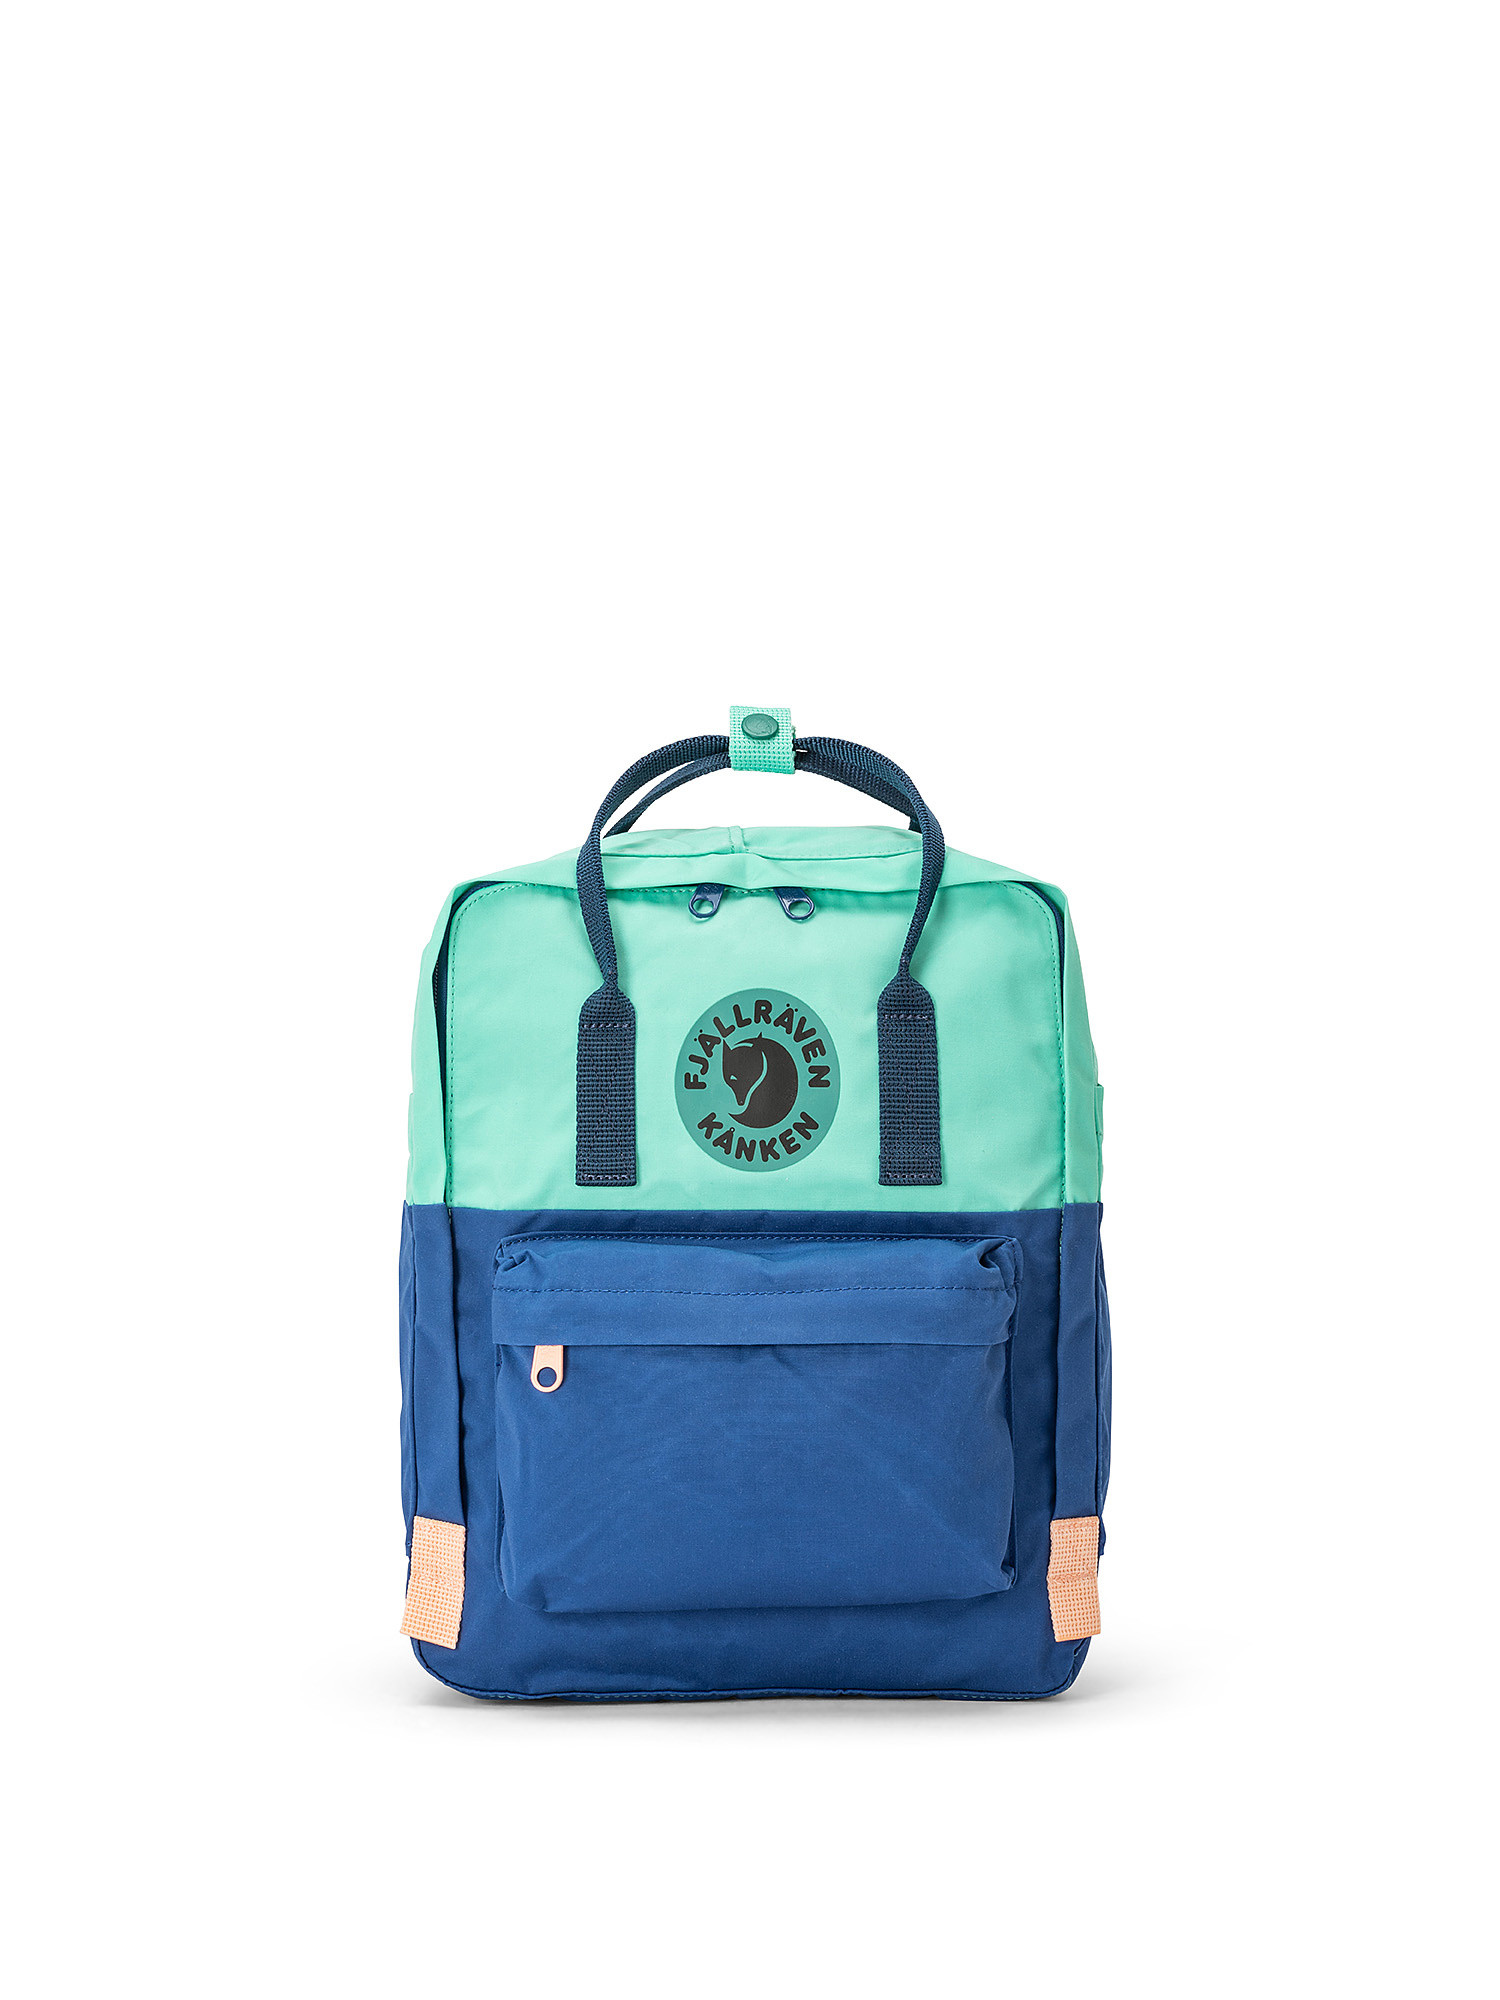 Backpack with adjustable shoulder straps, Blue, large image number 0